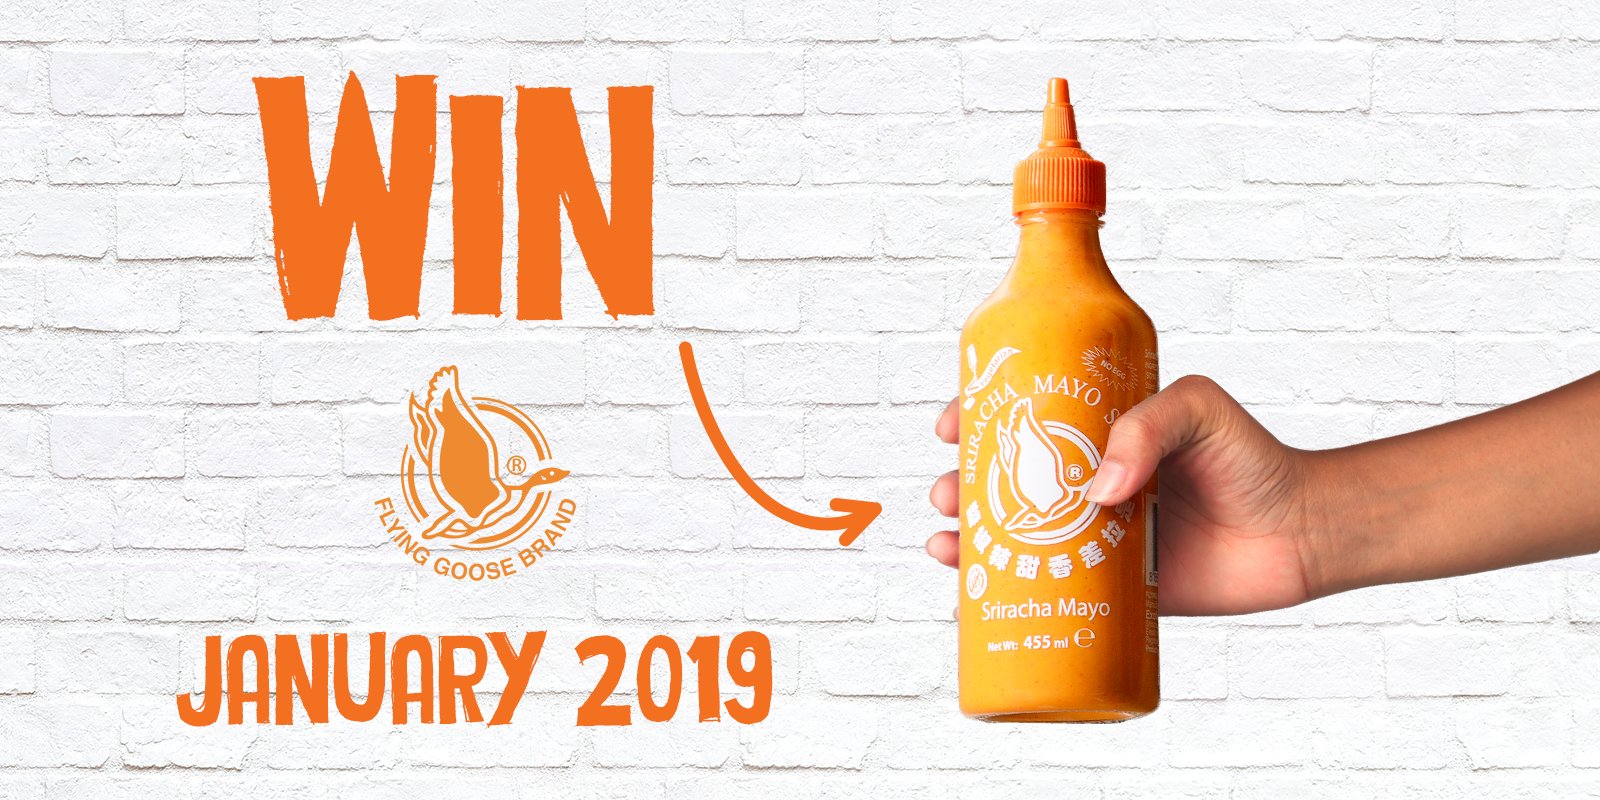 Sriracha Mayo Competition